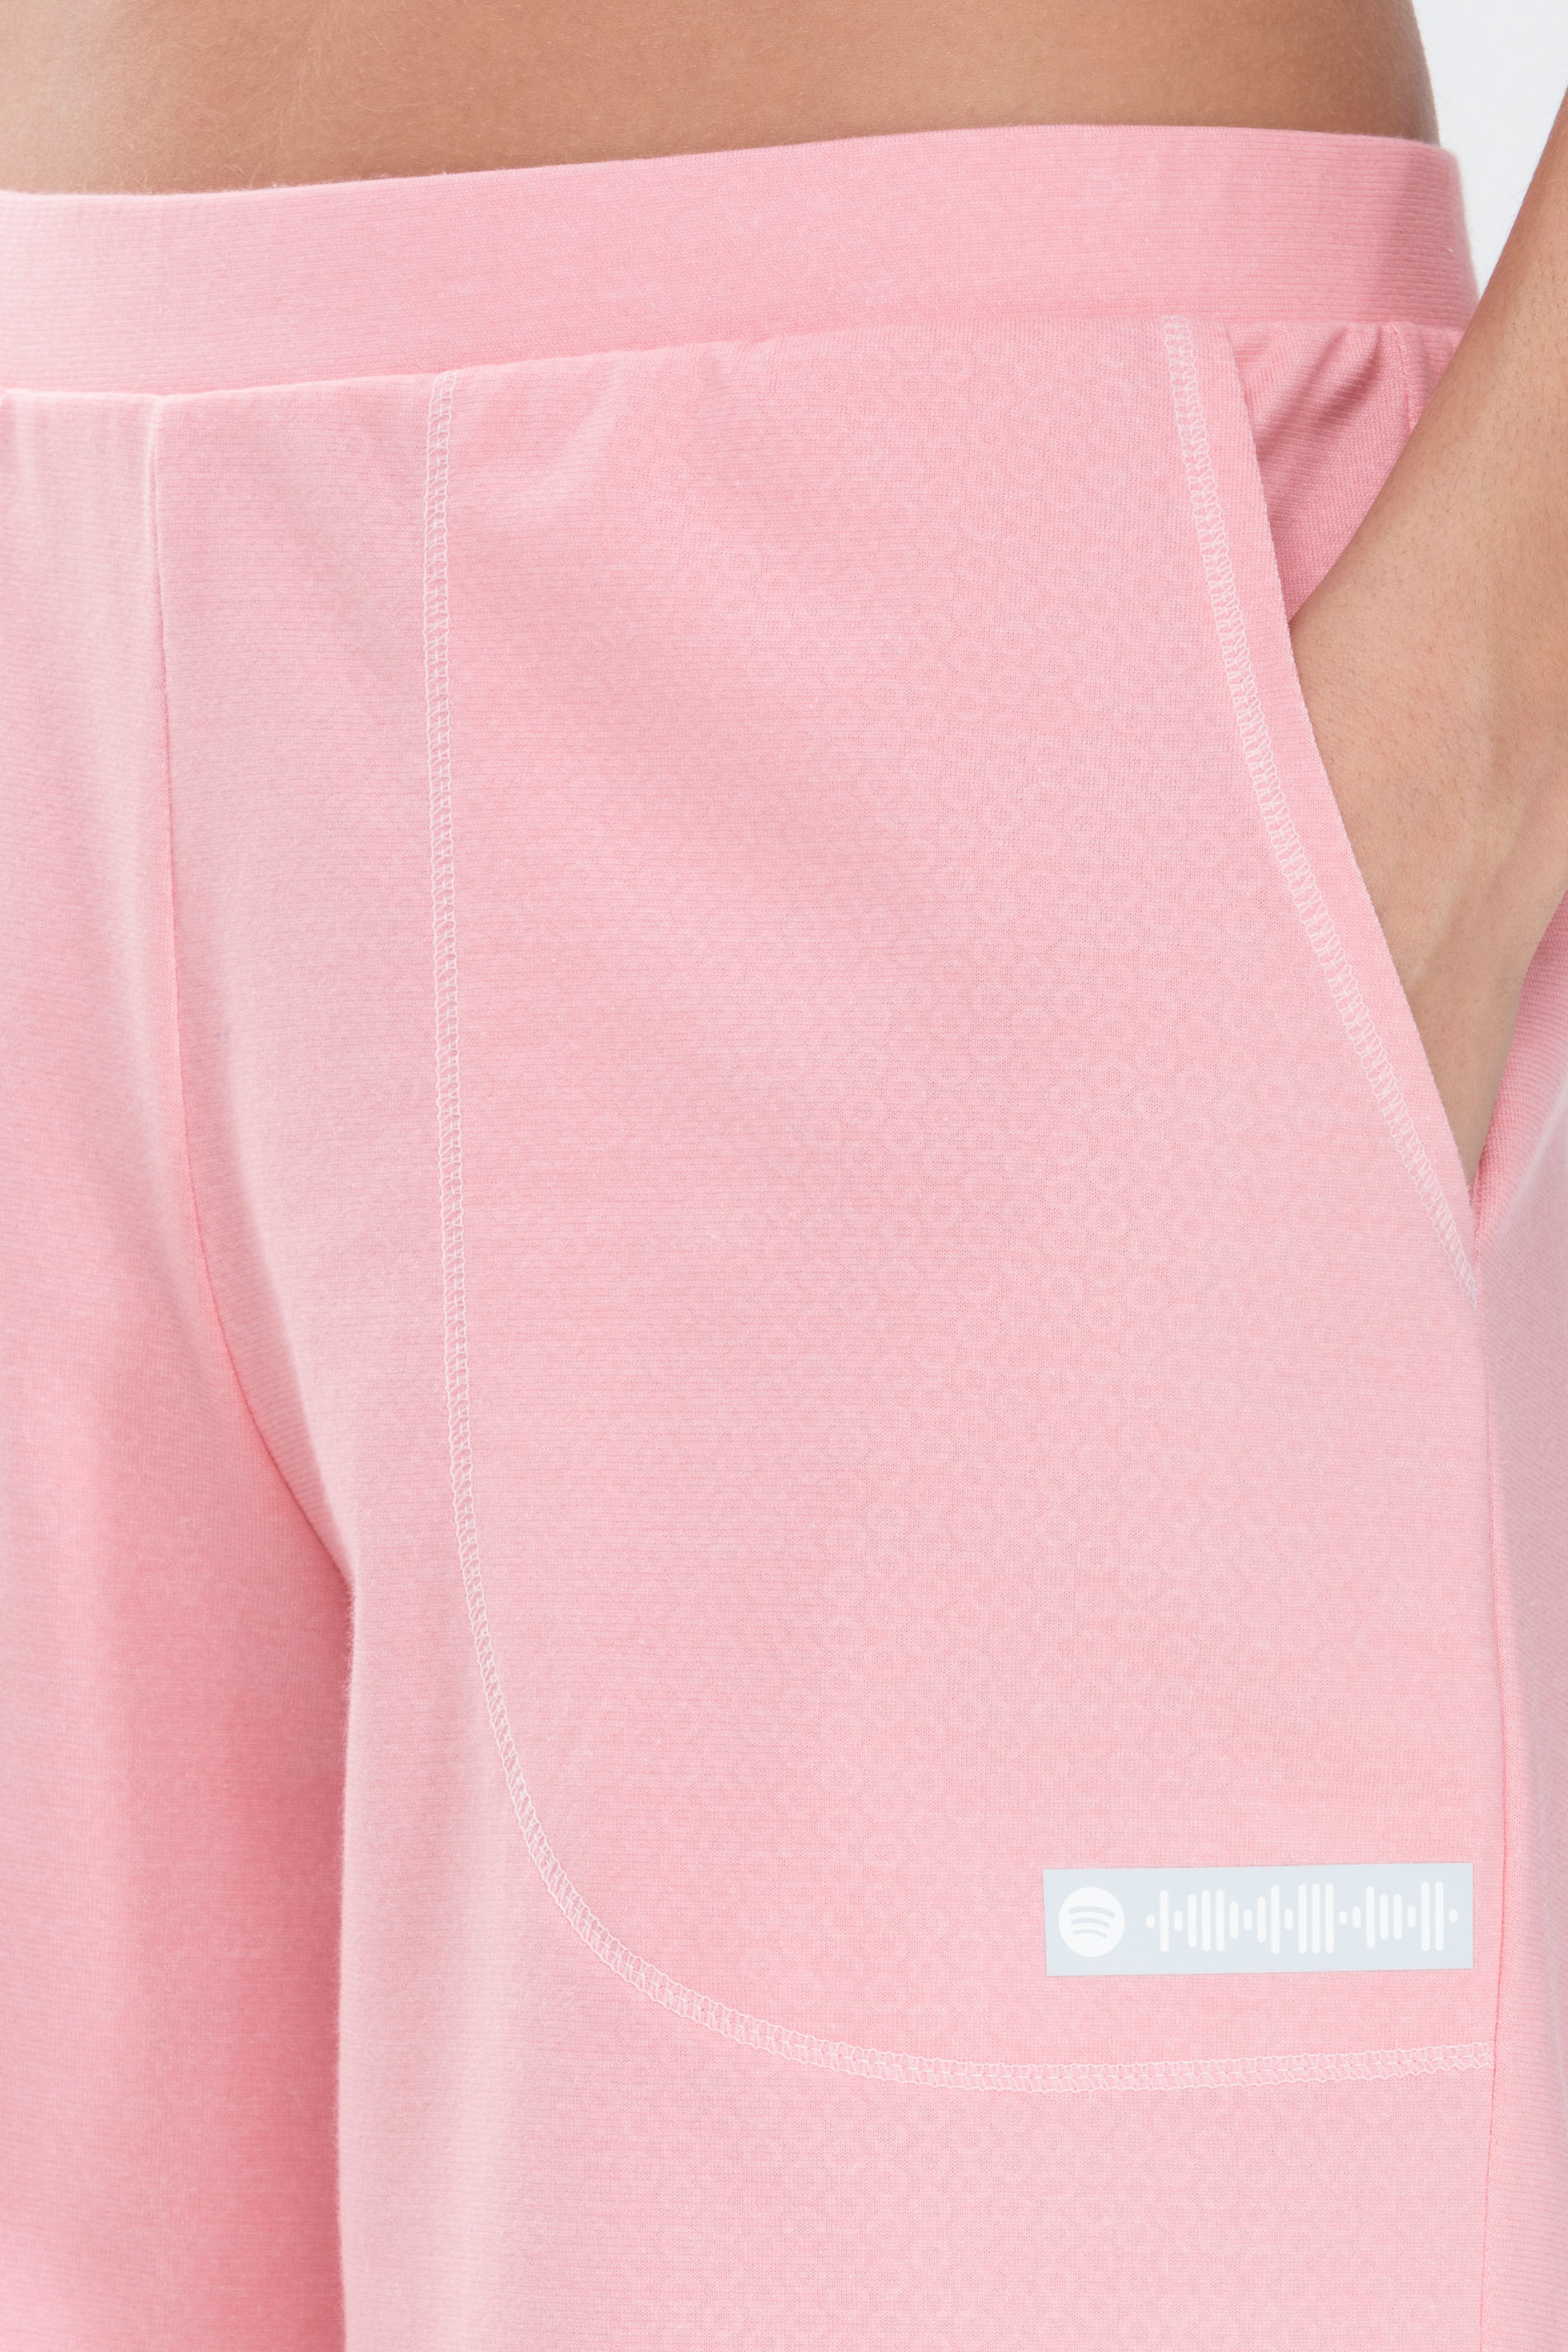 T-Shirt Powder Pink Serie Zzzleepwear Detailansicht 02 | mey®